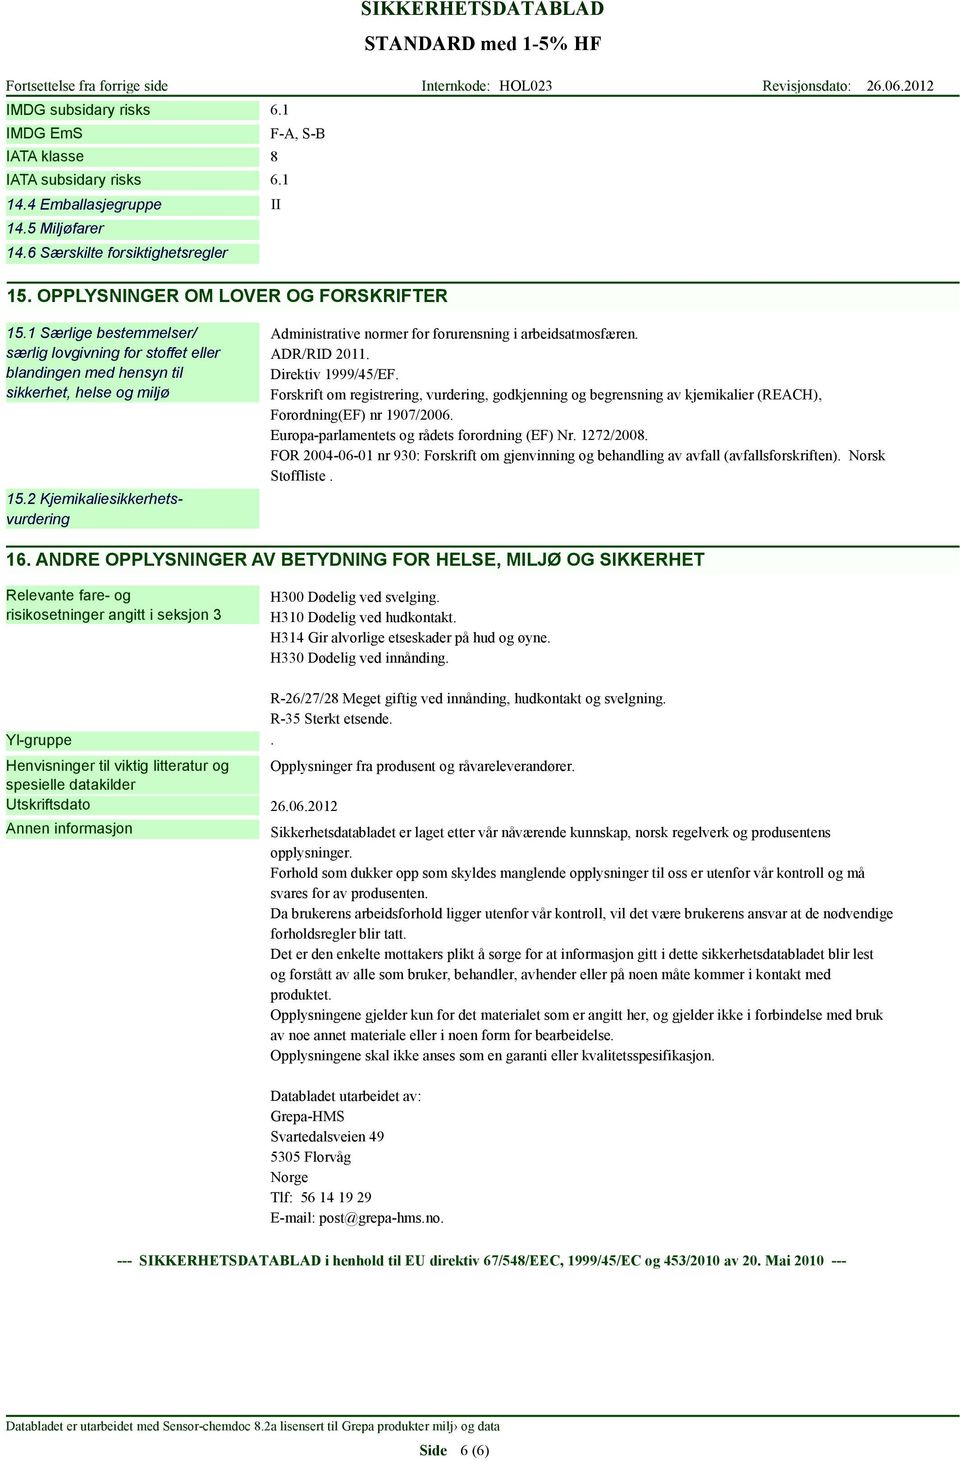 2 Kjemikaliesikkerhetsvurdering Administrative normer for forurensning i arbeidsatmosfæren. ADR/RID 2011. Direktiv 1999/45/EF.